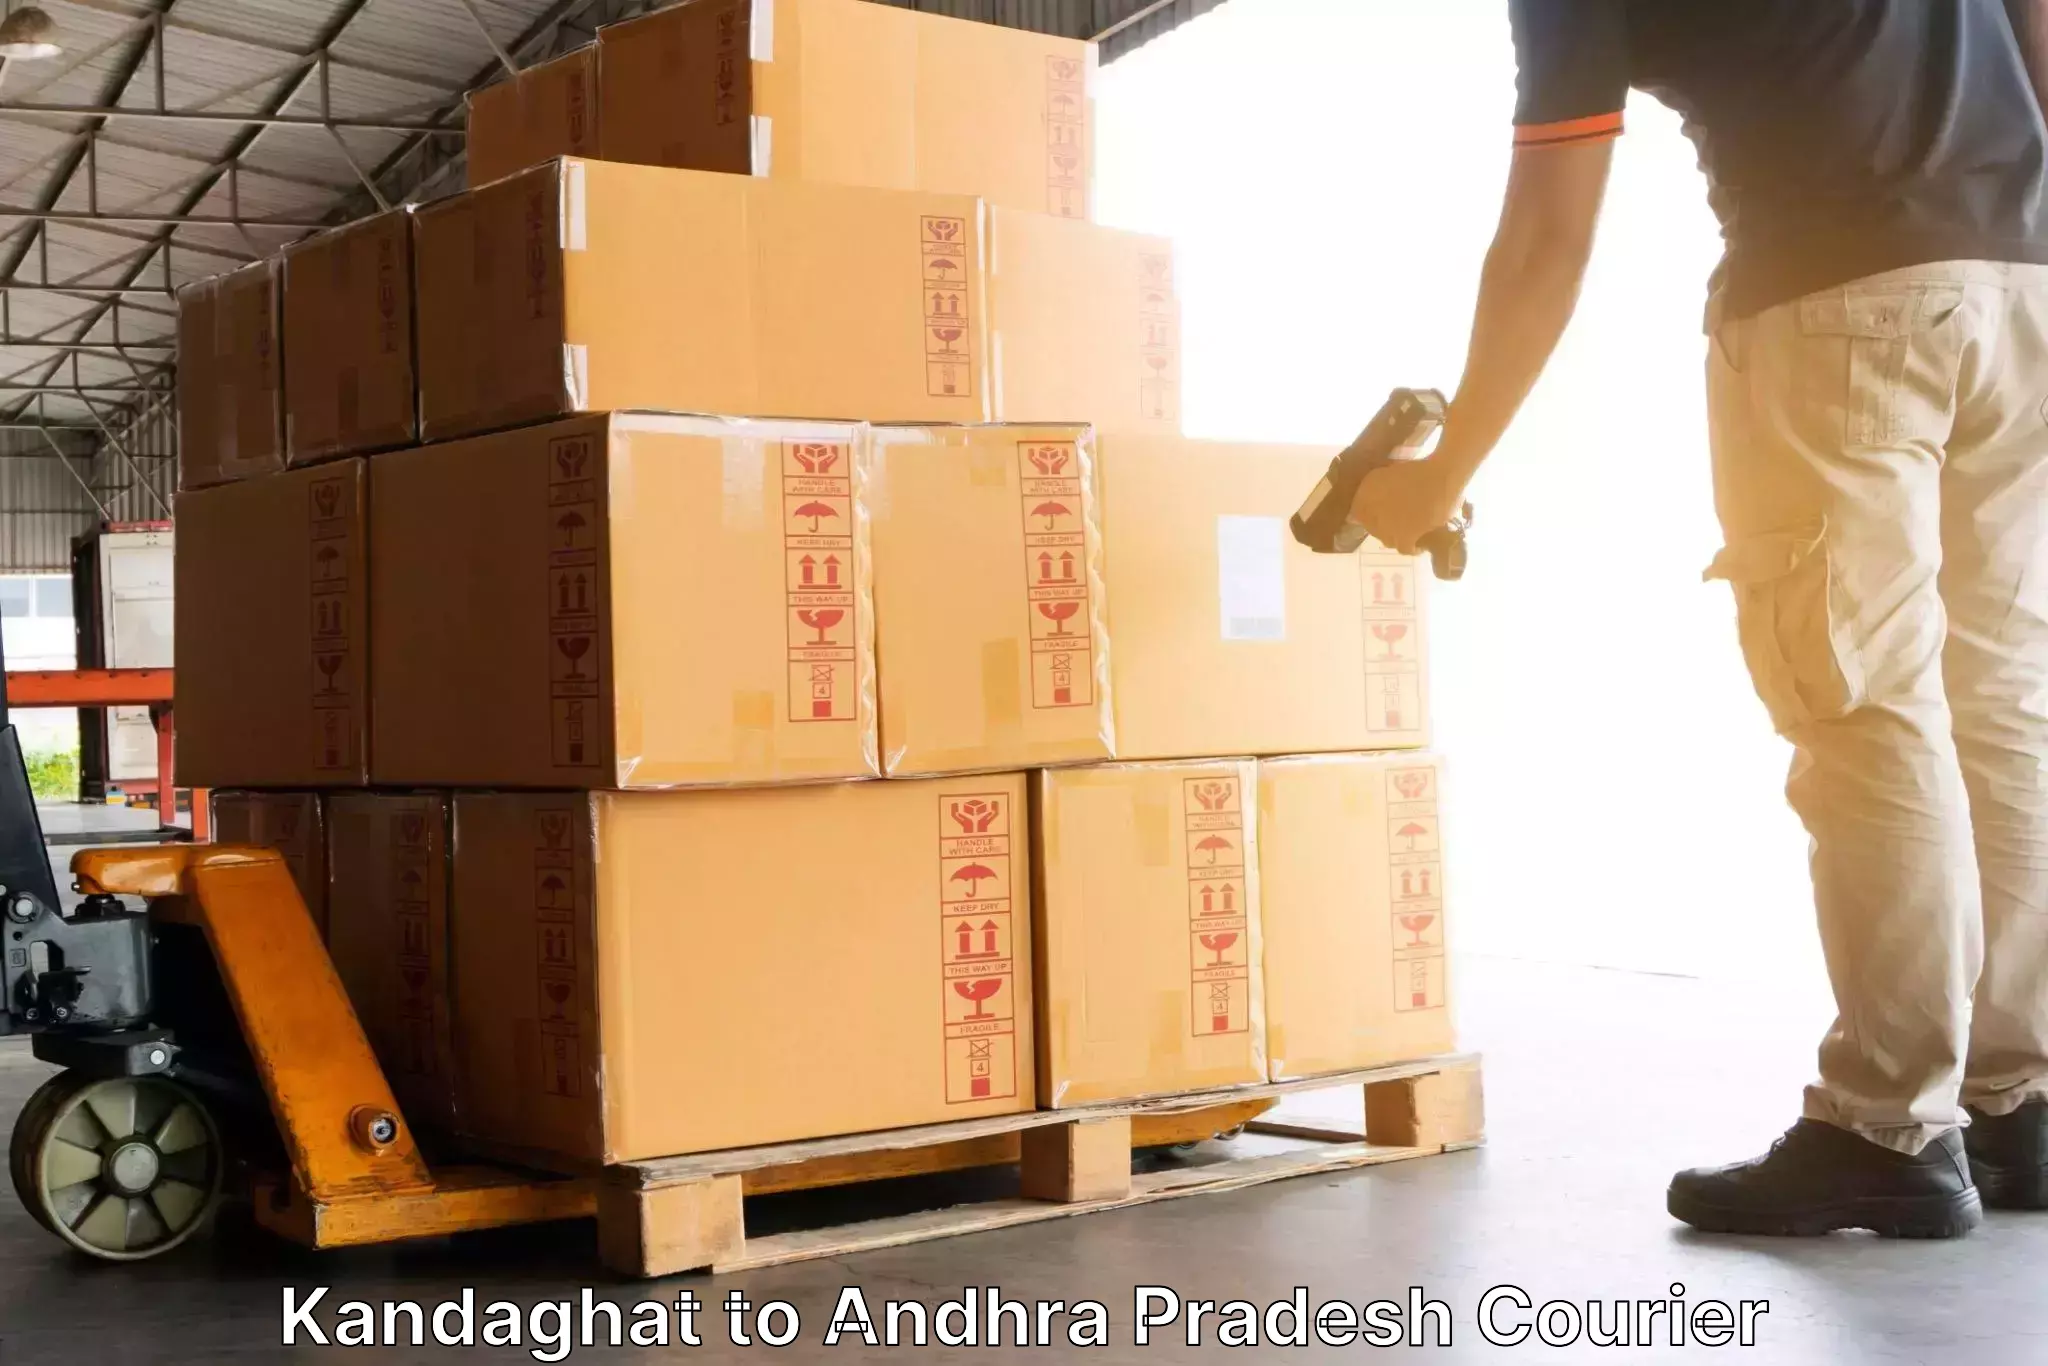 Efficient parcel transport Kandaghat to Adoni